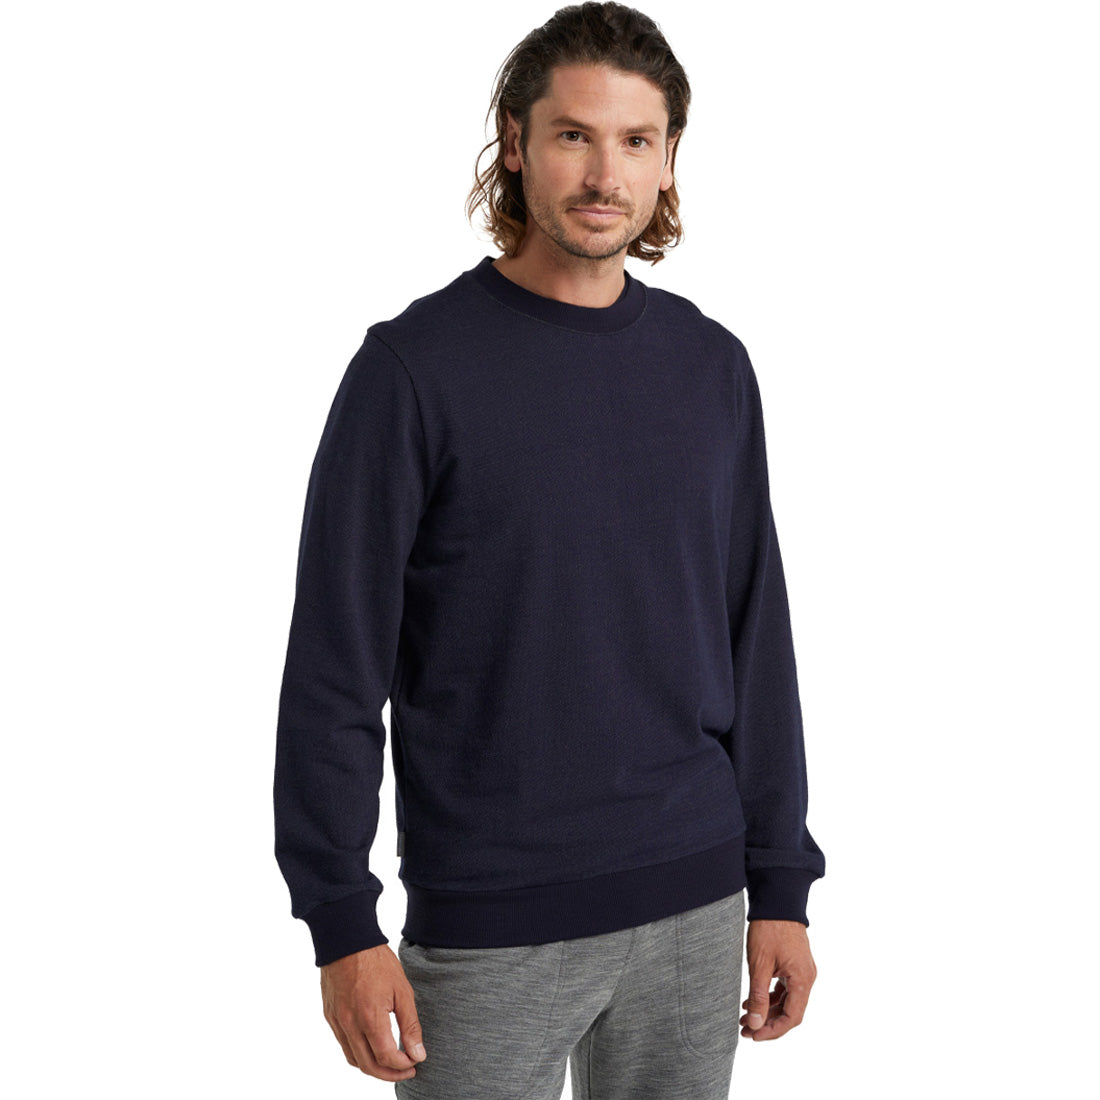 Icebreaker Merino Central Sweatshirt - Men's